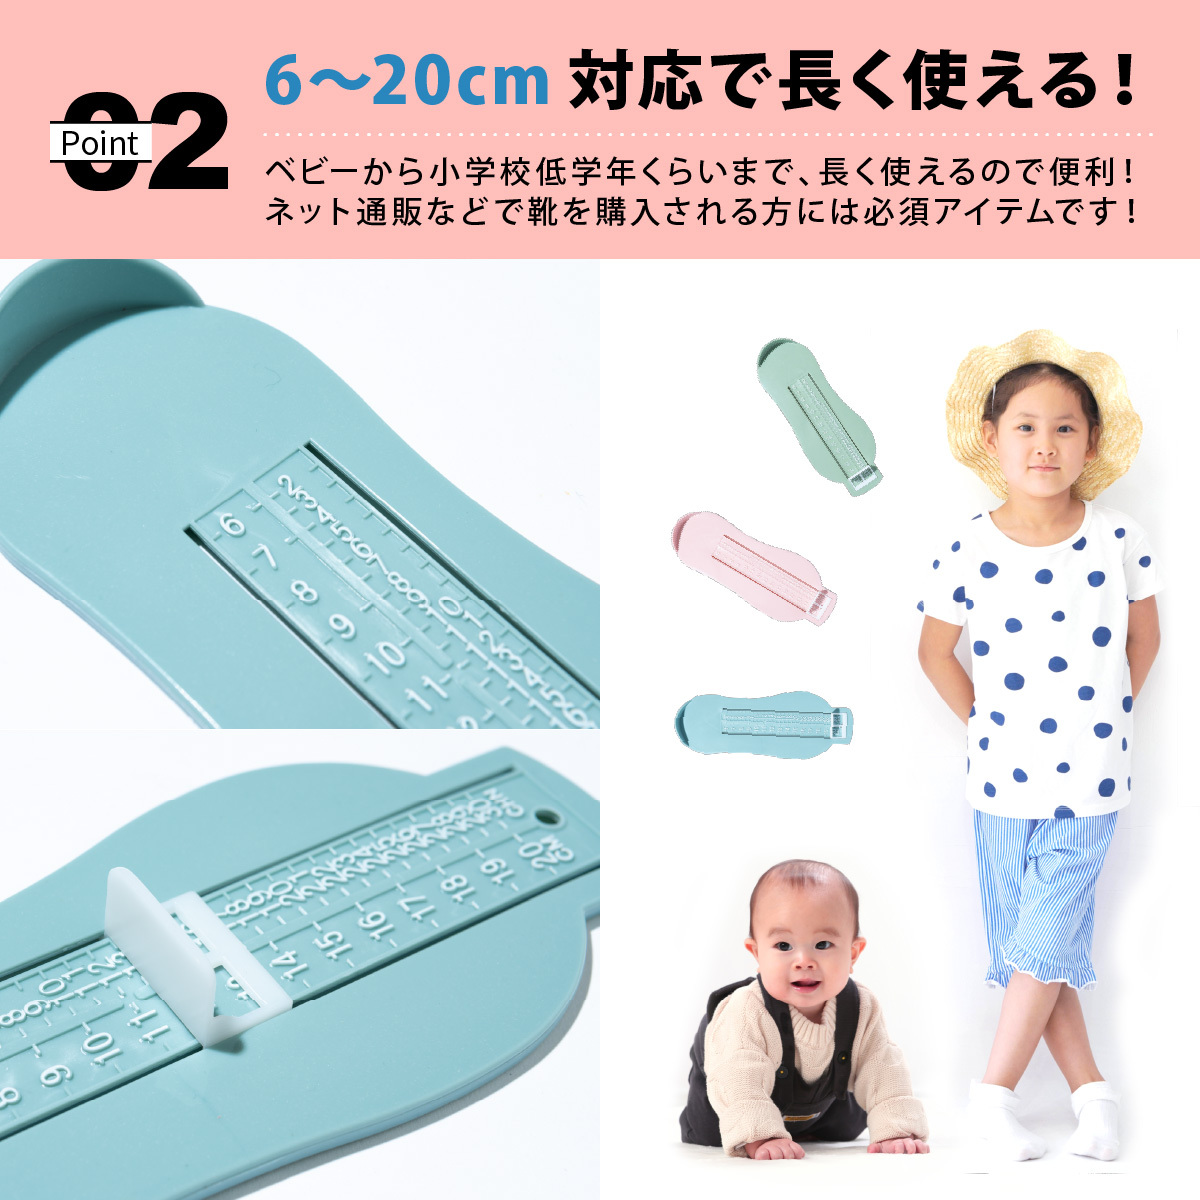  foot Major ребенок детские весы пара. размер измеритель младенец ребенок Kids baby ... для foot шкала 6~20cm простой подарок подарок празднование рождения 